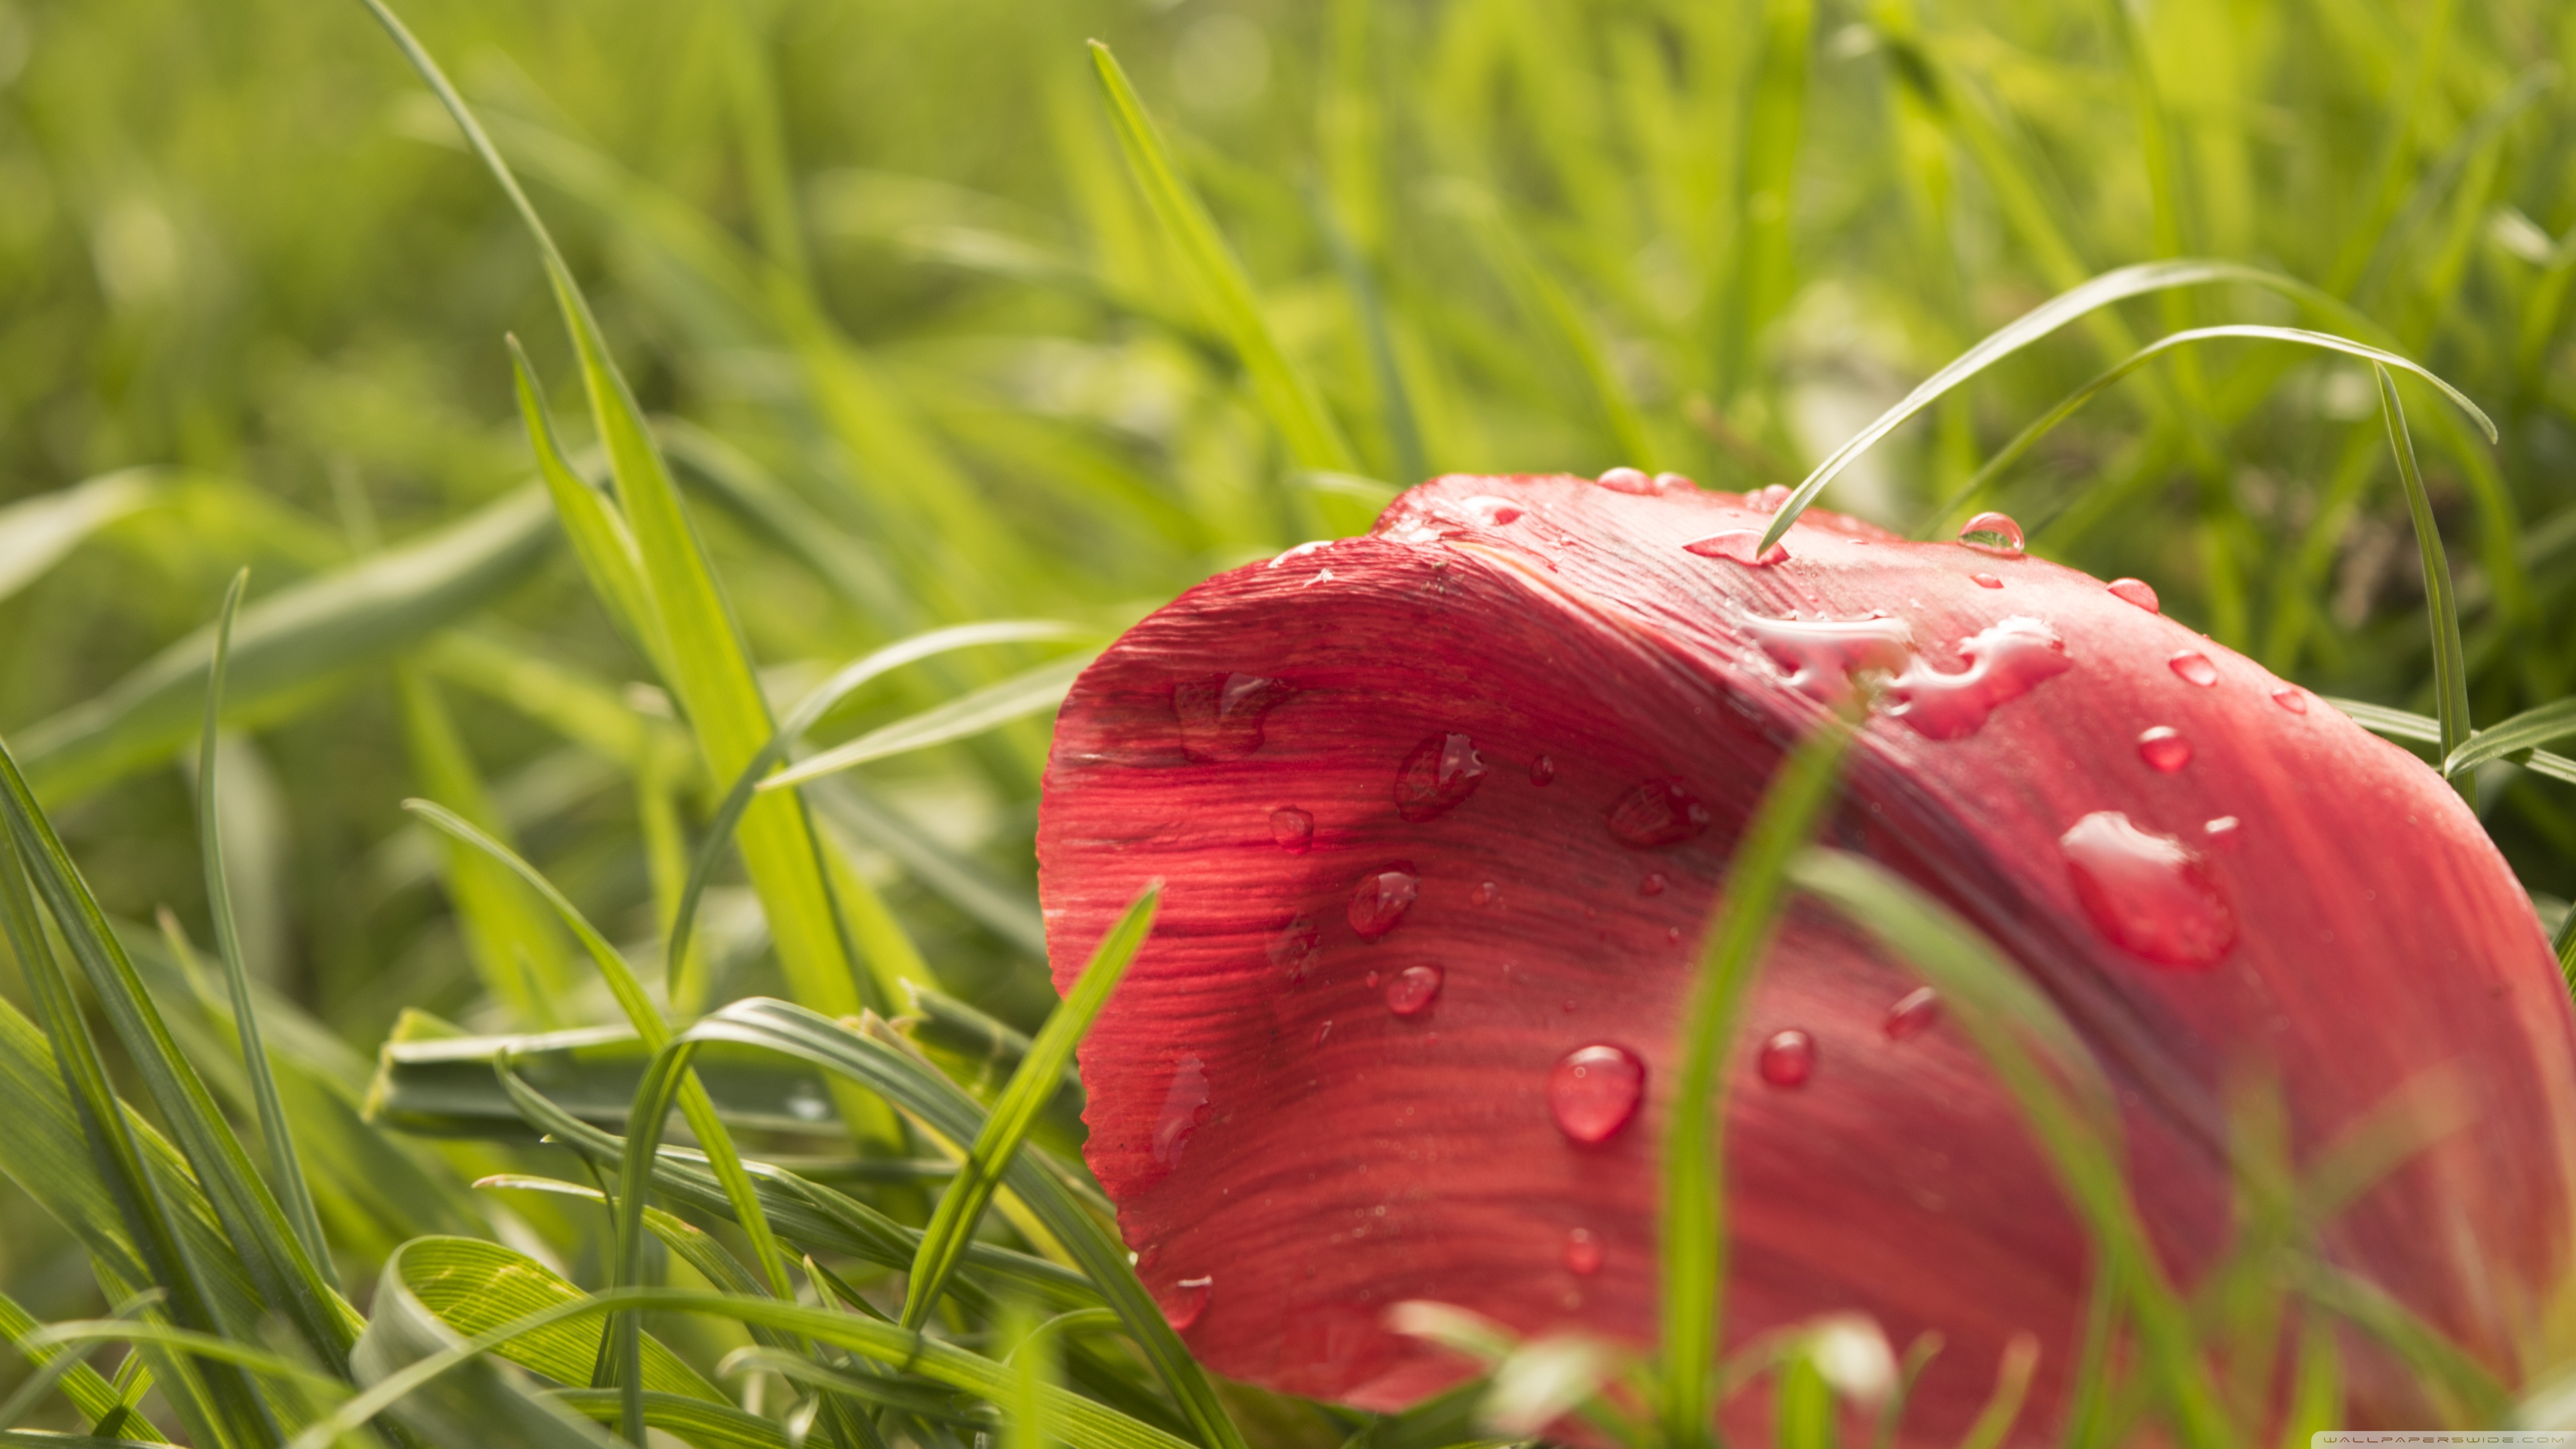 عکس نزدیک و ماکرو از گلبرگ سرخ در چمن با قطرات شبنم